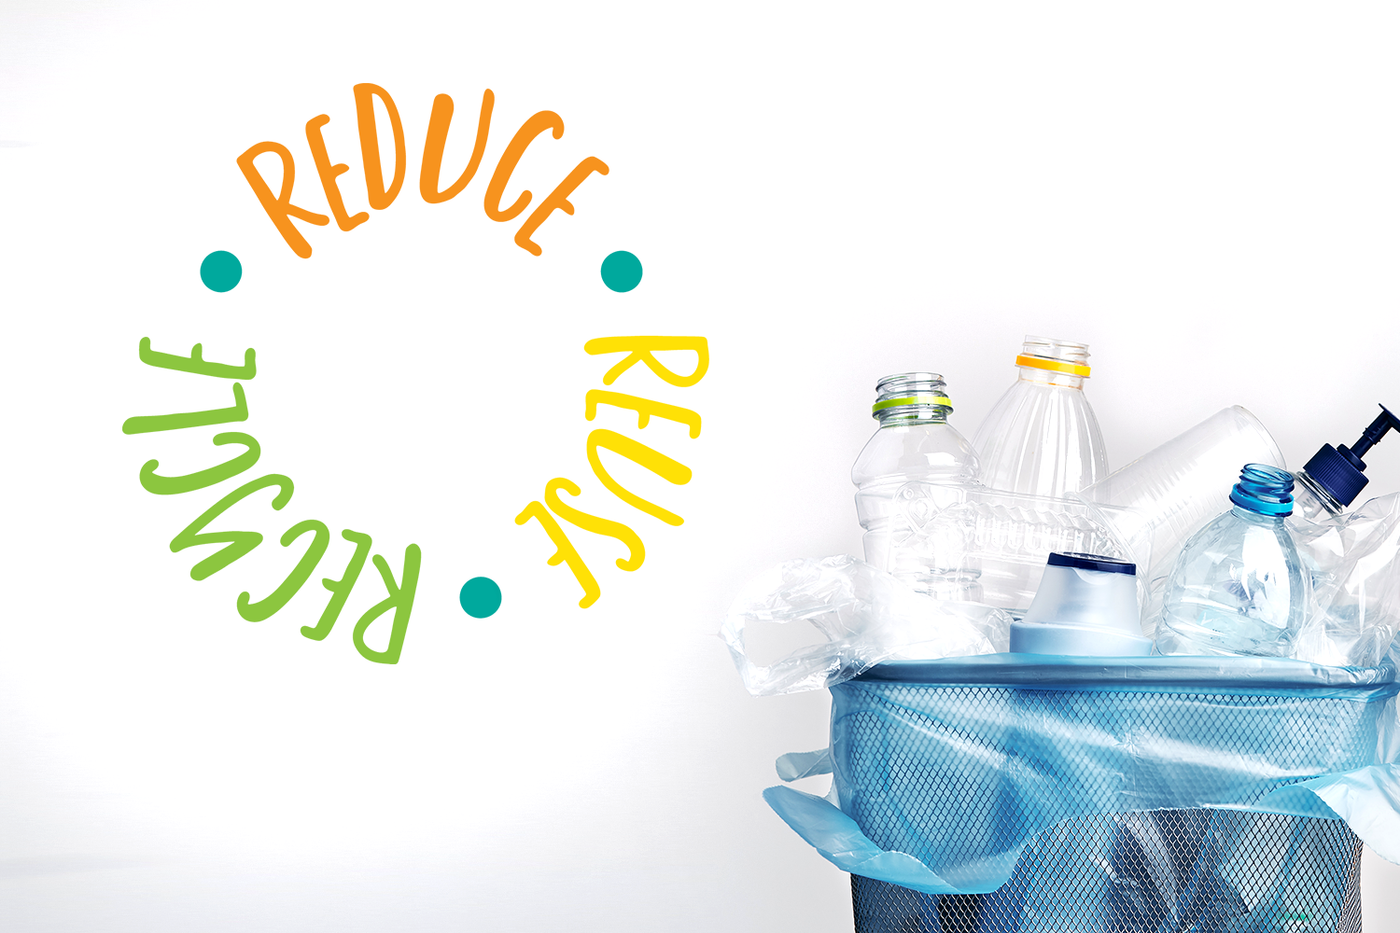 Reduce Reuse Recycle circular text SVG Design